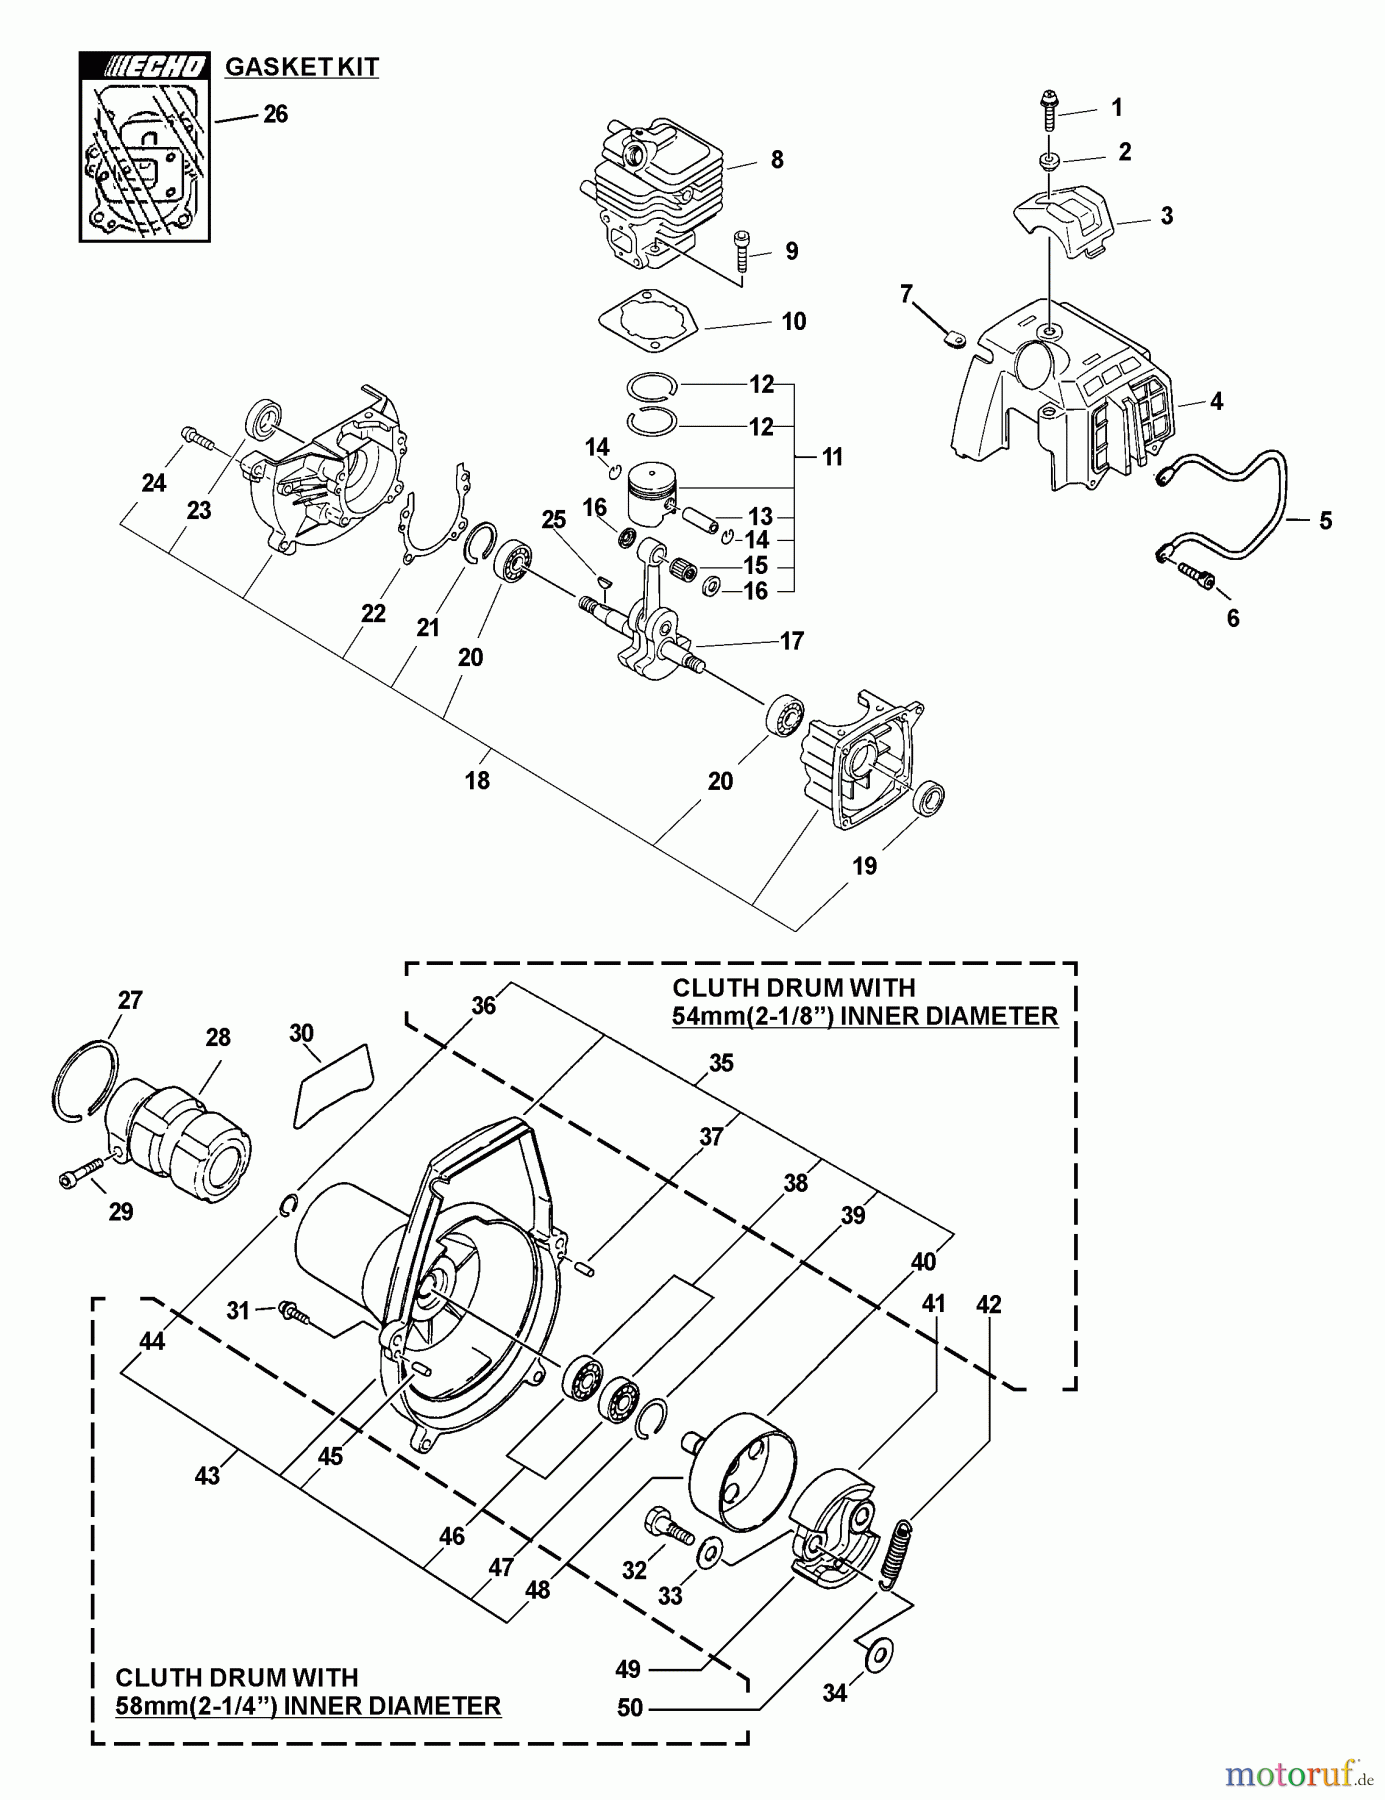  Echo Trimmer, Faden / Bürste PAS-2601 - Echo Power Unit (Type 1E) Crankcase, Engine, Engine Cover, Fan Case